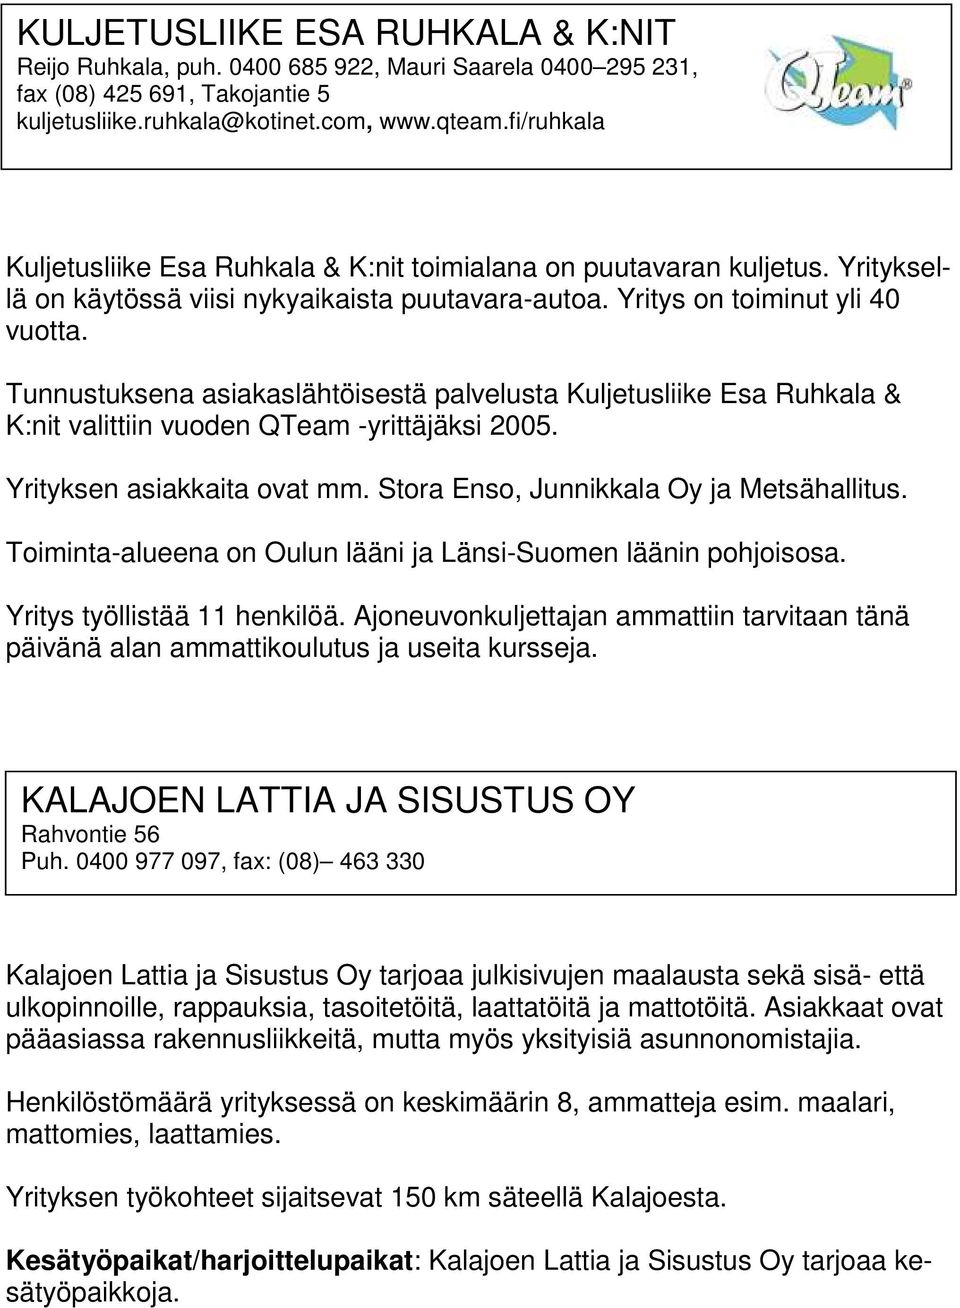 Tunnustuksena asiakaslähtöisestä palvelusta Kuljetusliike Esa Ruhkala & K:nit valittiin vuoden QTeam -yrittäjäksi 2005. Yrityksen asiakkaita ovat mm. Stora Enso, Junnikkala Oy ja Metsähallitus.